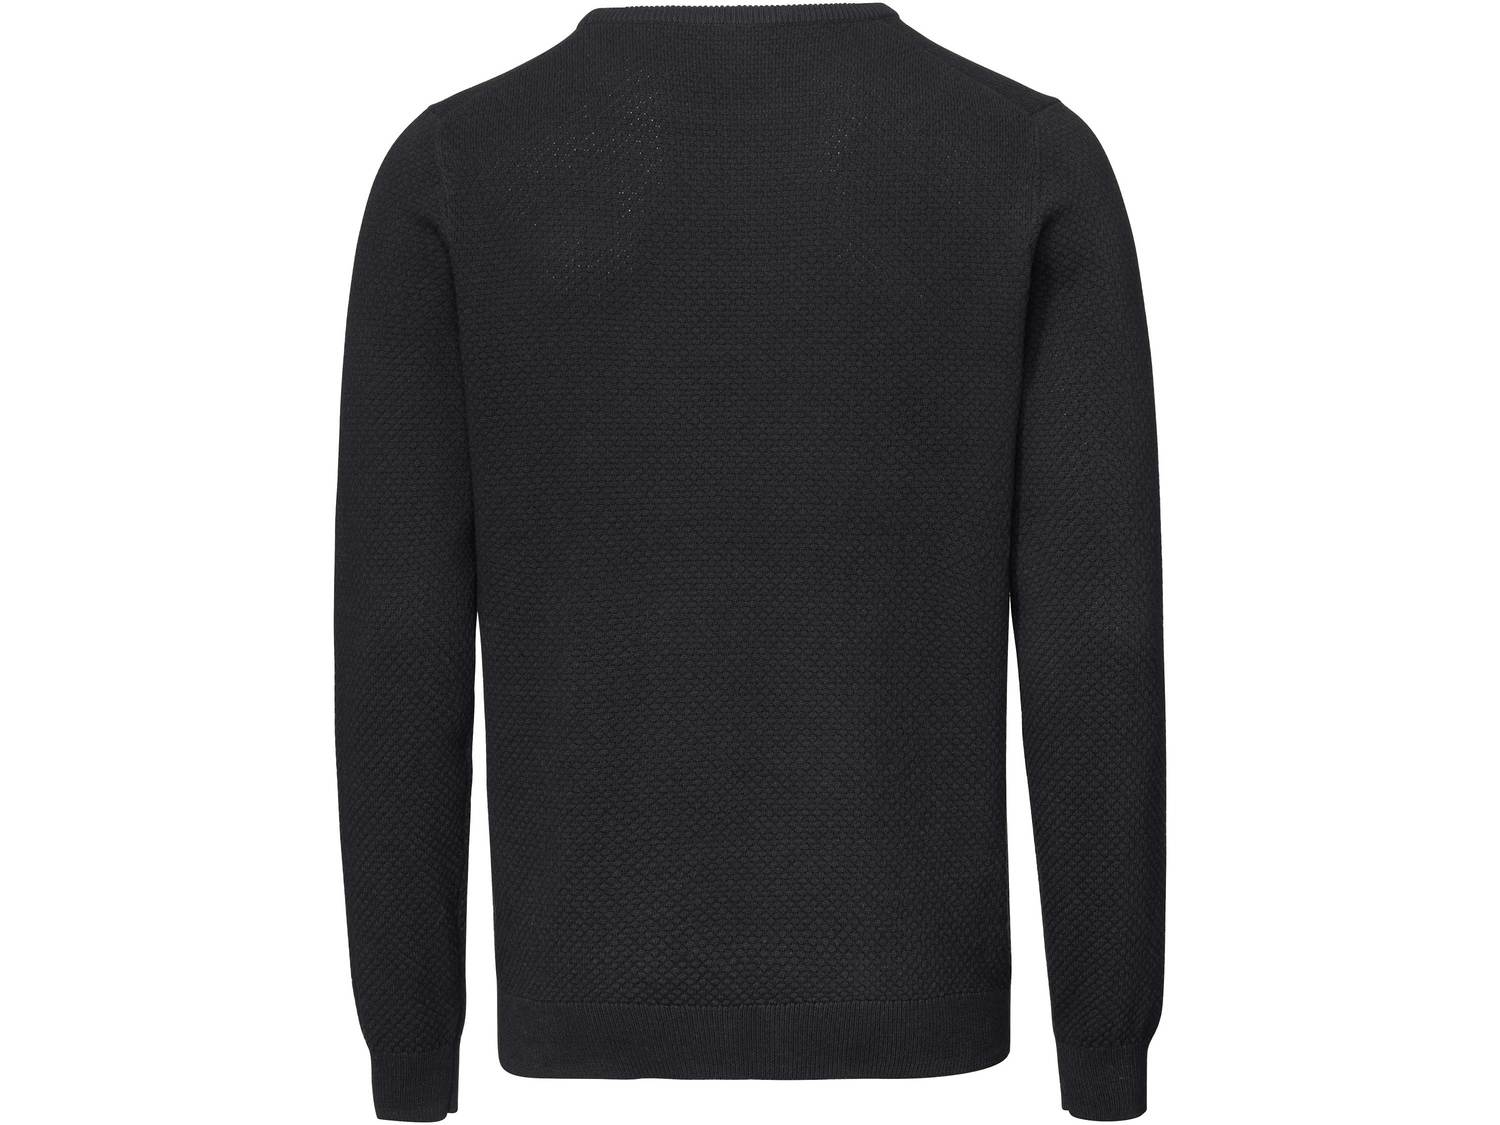 Sweter z biobawełny Livergy, cena 34,99 PLN 
- przyjemny dla skóry dzięki biobawełnie
- ...